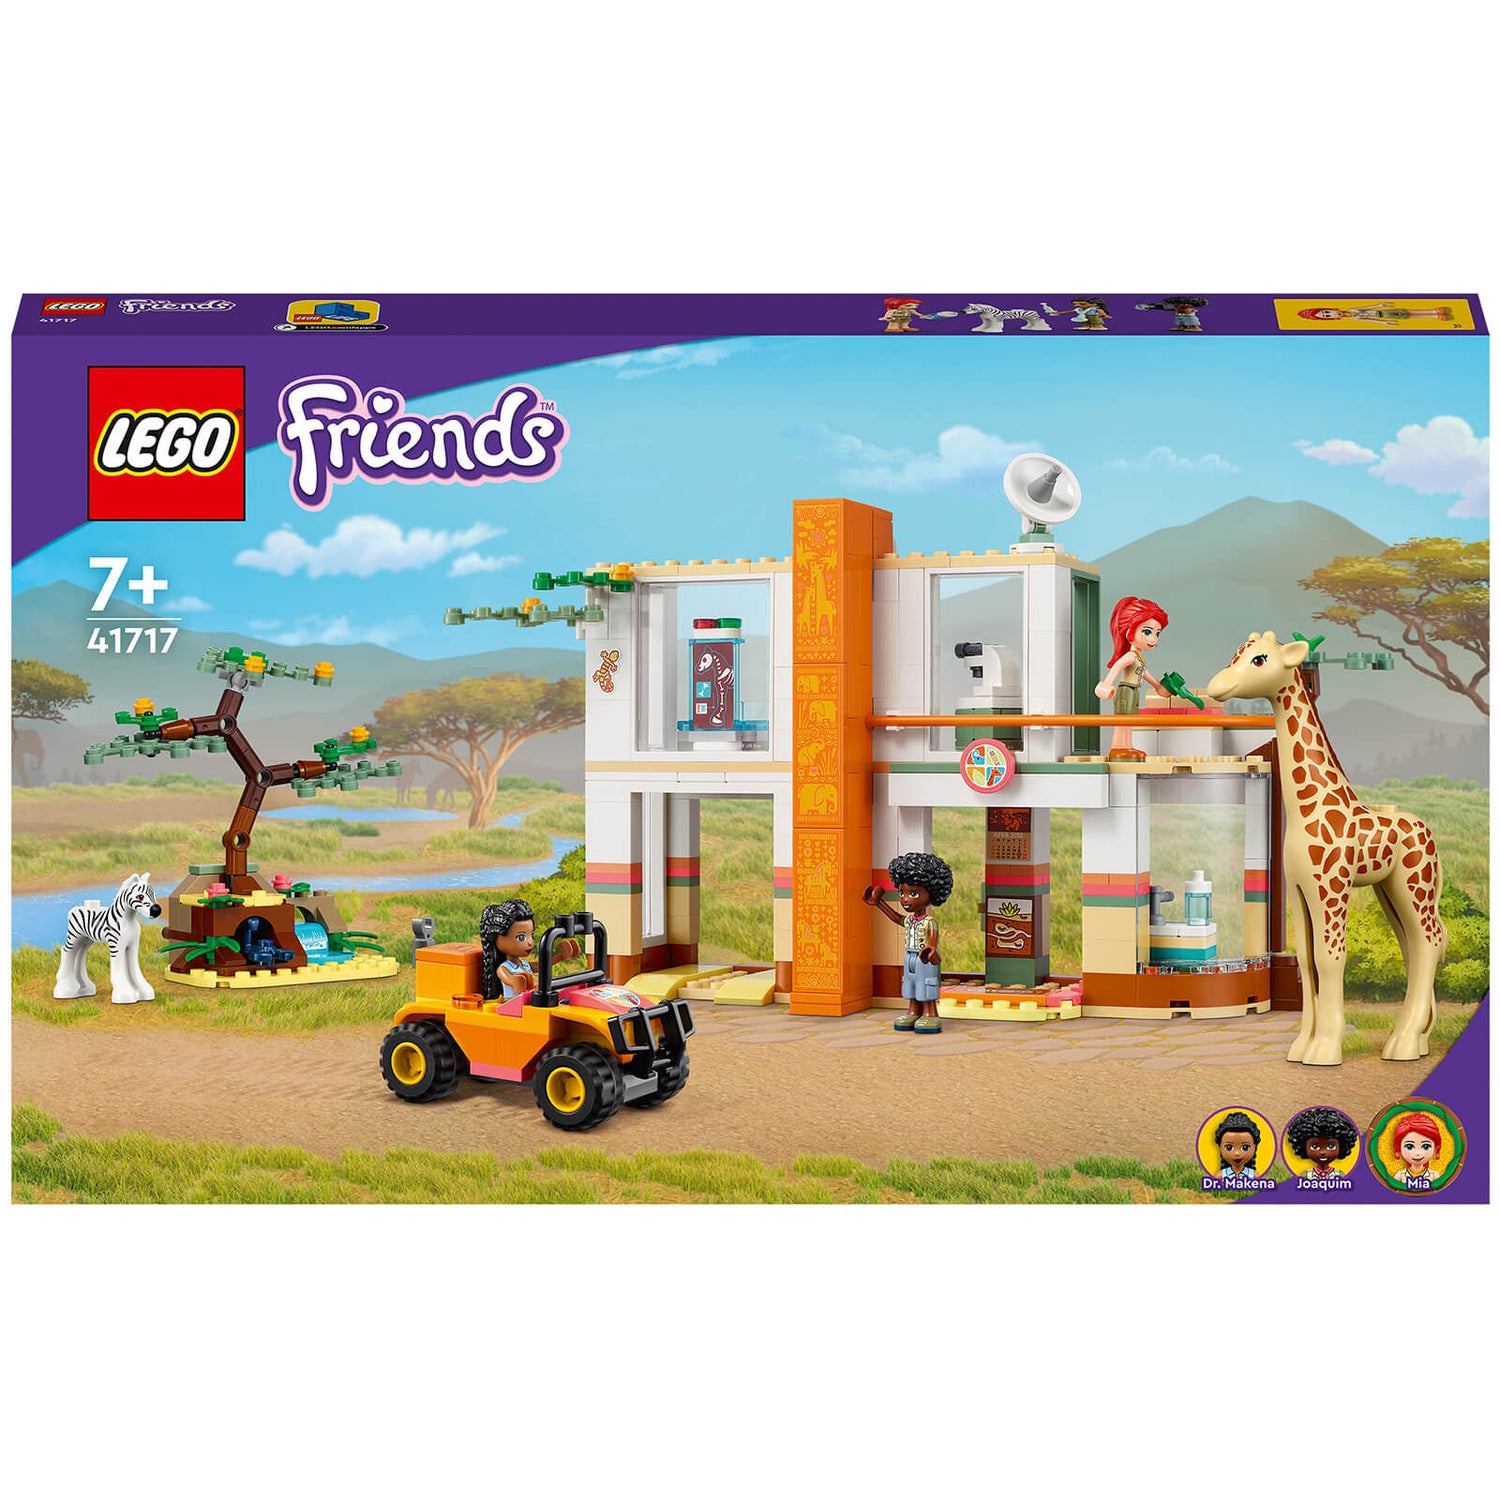 LEGO Friends: Mia's Wildlife Rescue Animal Toy Play Set (41717) | retro  vibes and nostalgia - all on VeryNeko USA!